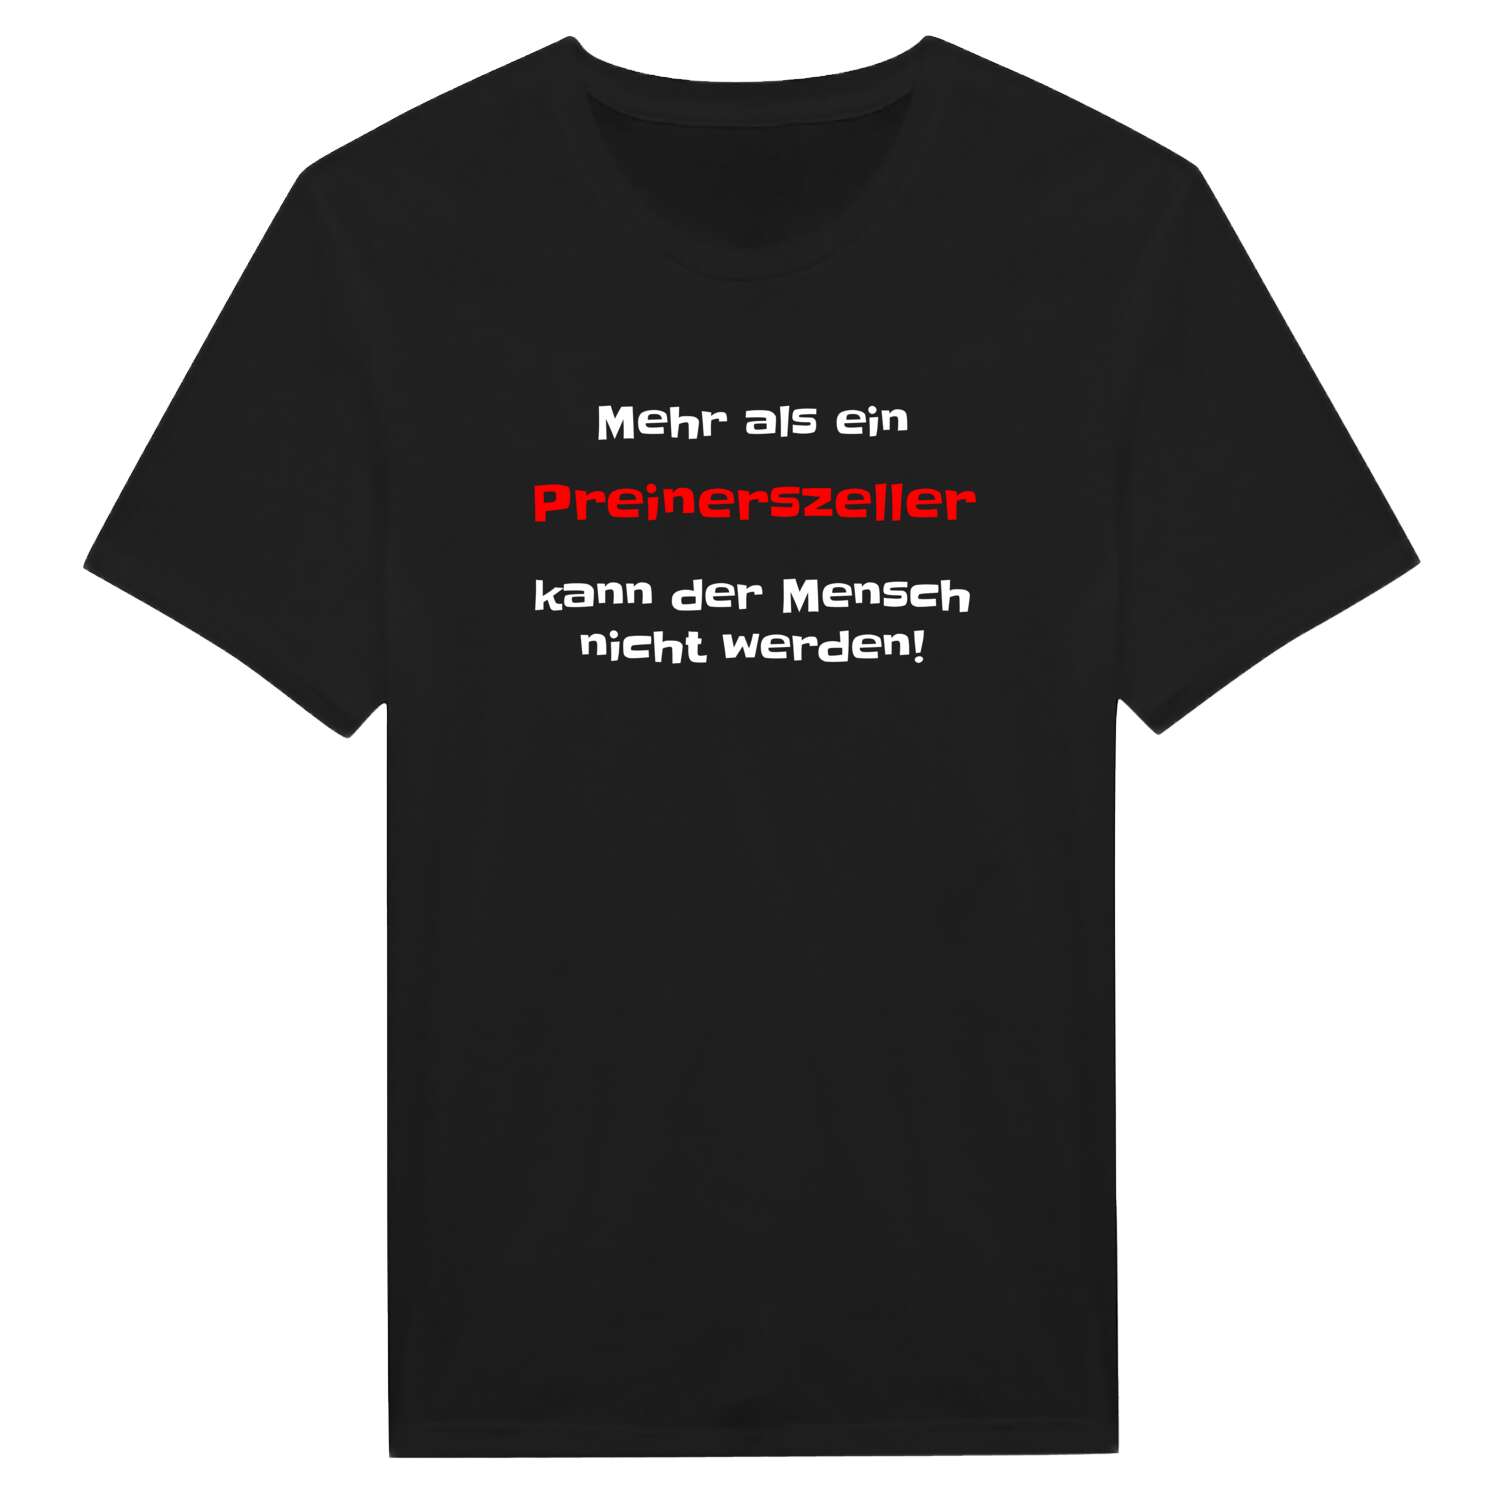 Preinerszell T-Shirt »Mehr als ein«